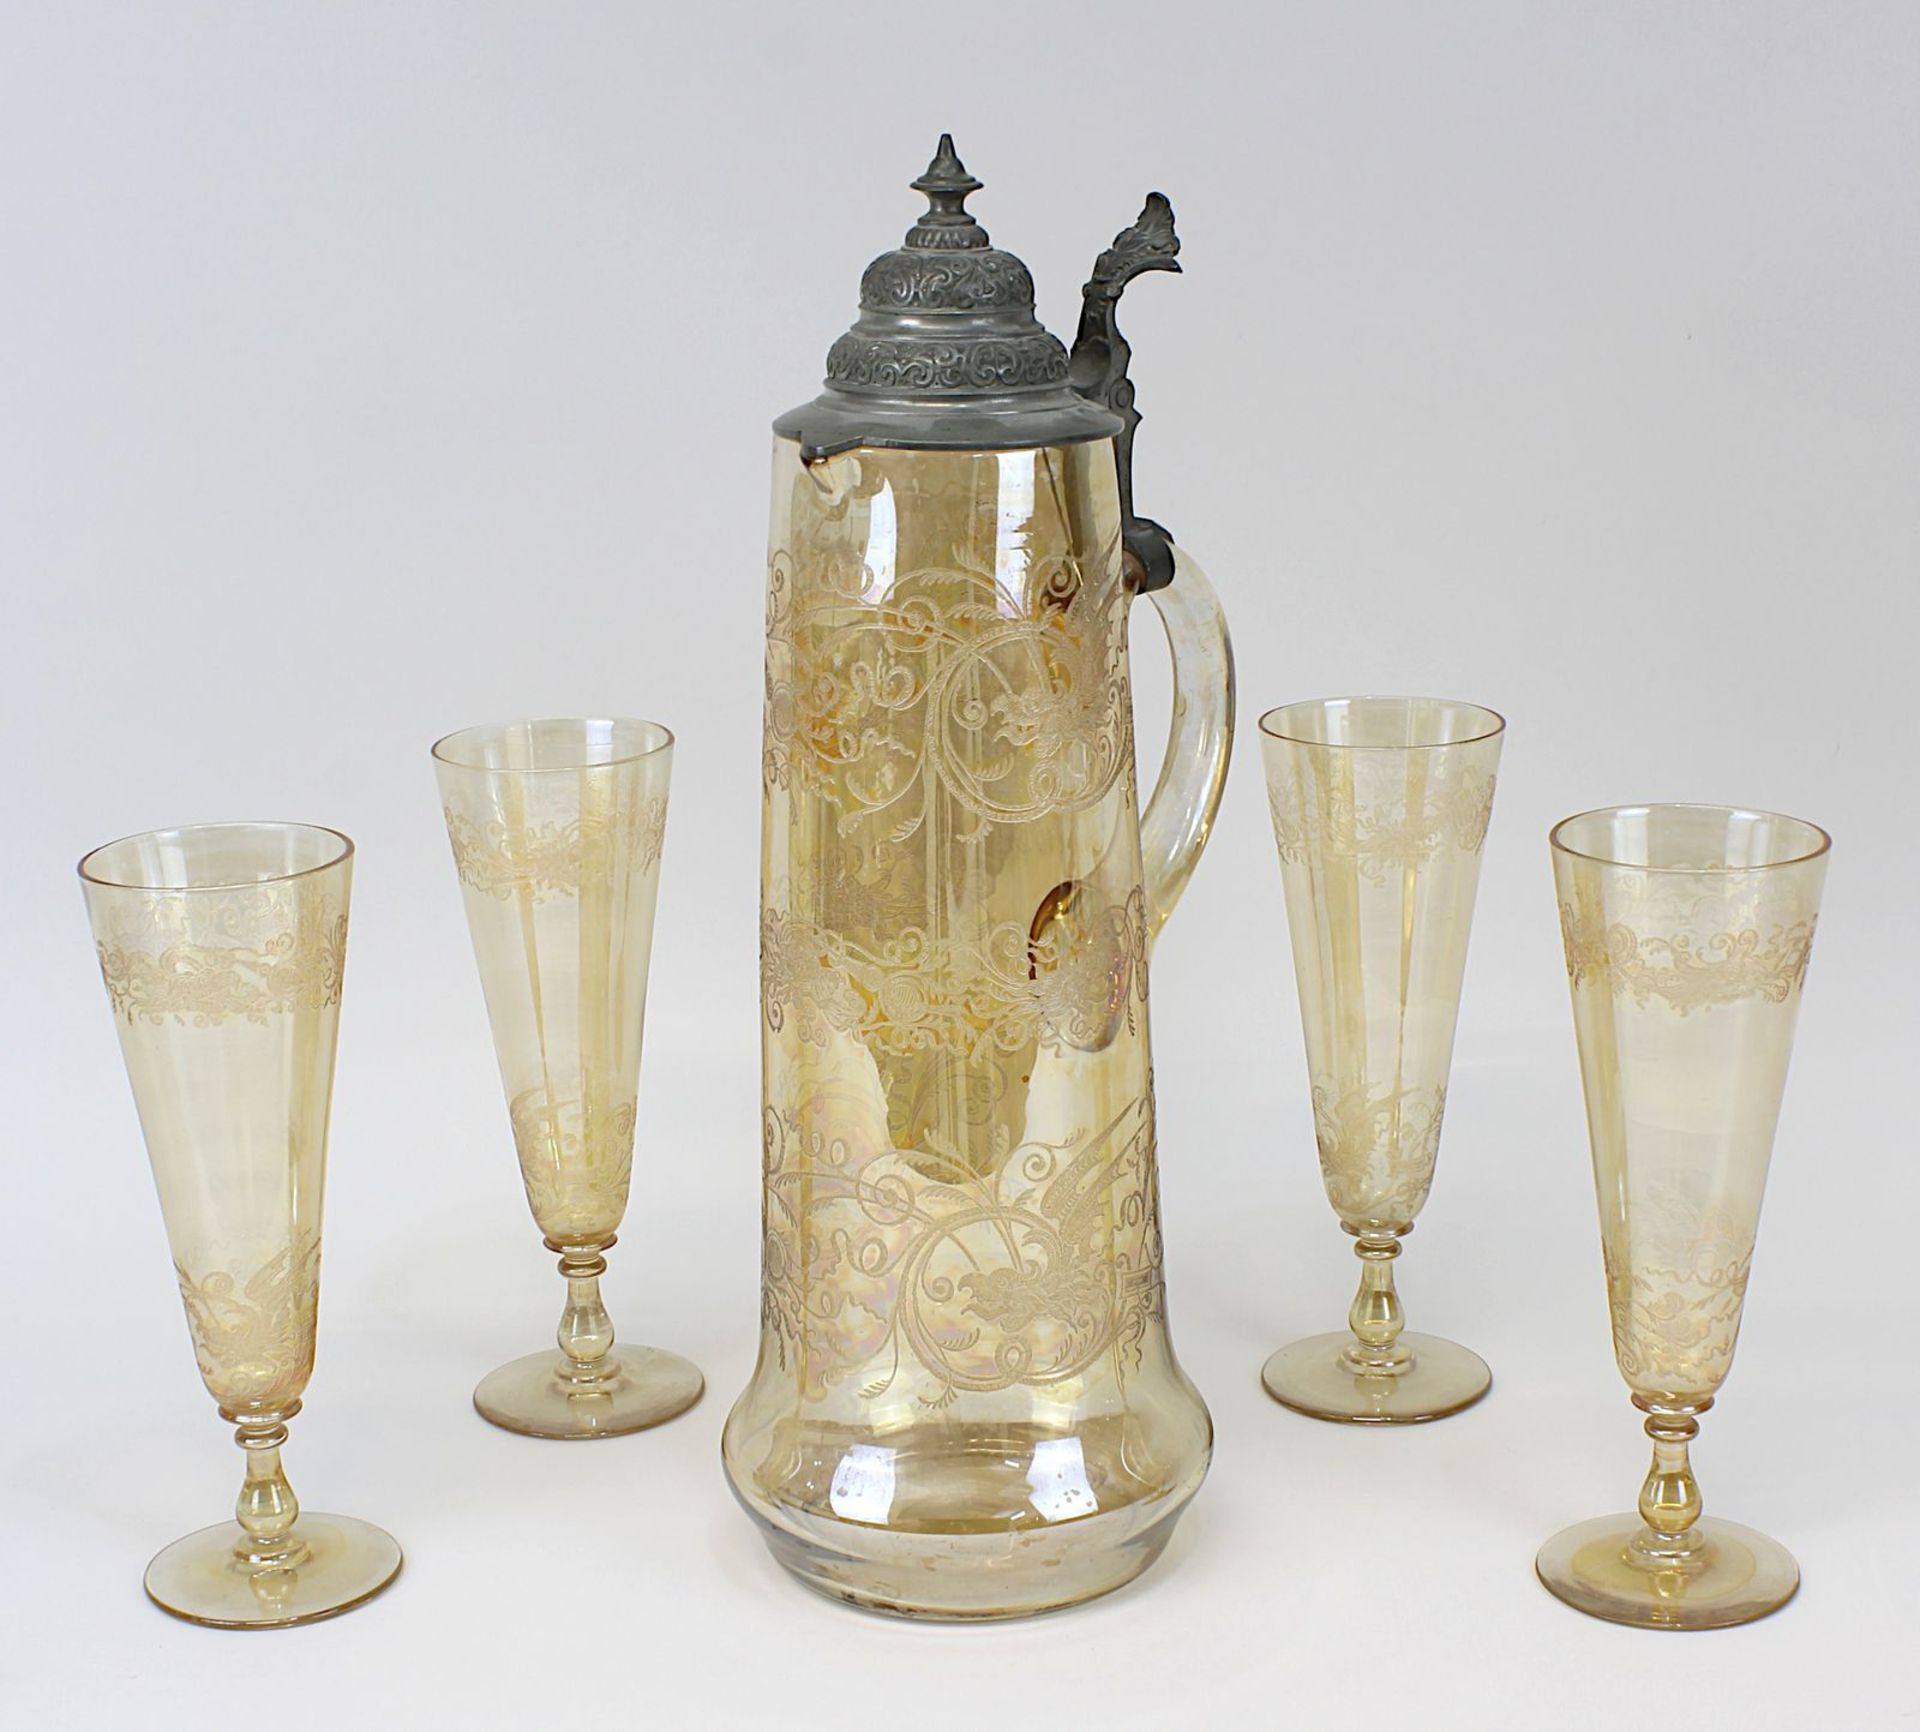 Historismus-Schenkkanne mit 4 Gläsern, jew. zart-hellbraunes Glas mit geätztem Dekor von Fantasie-